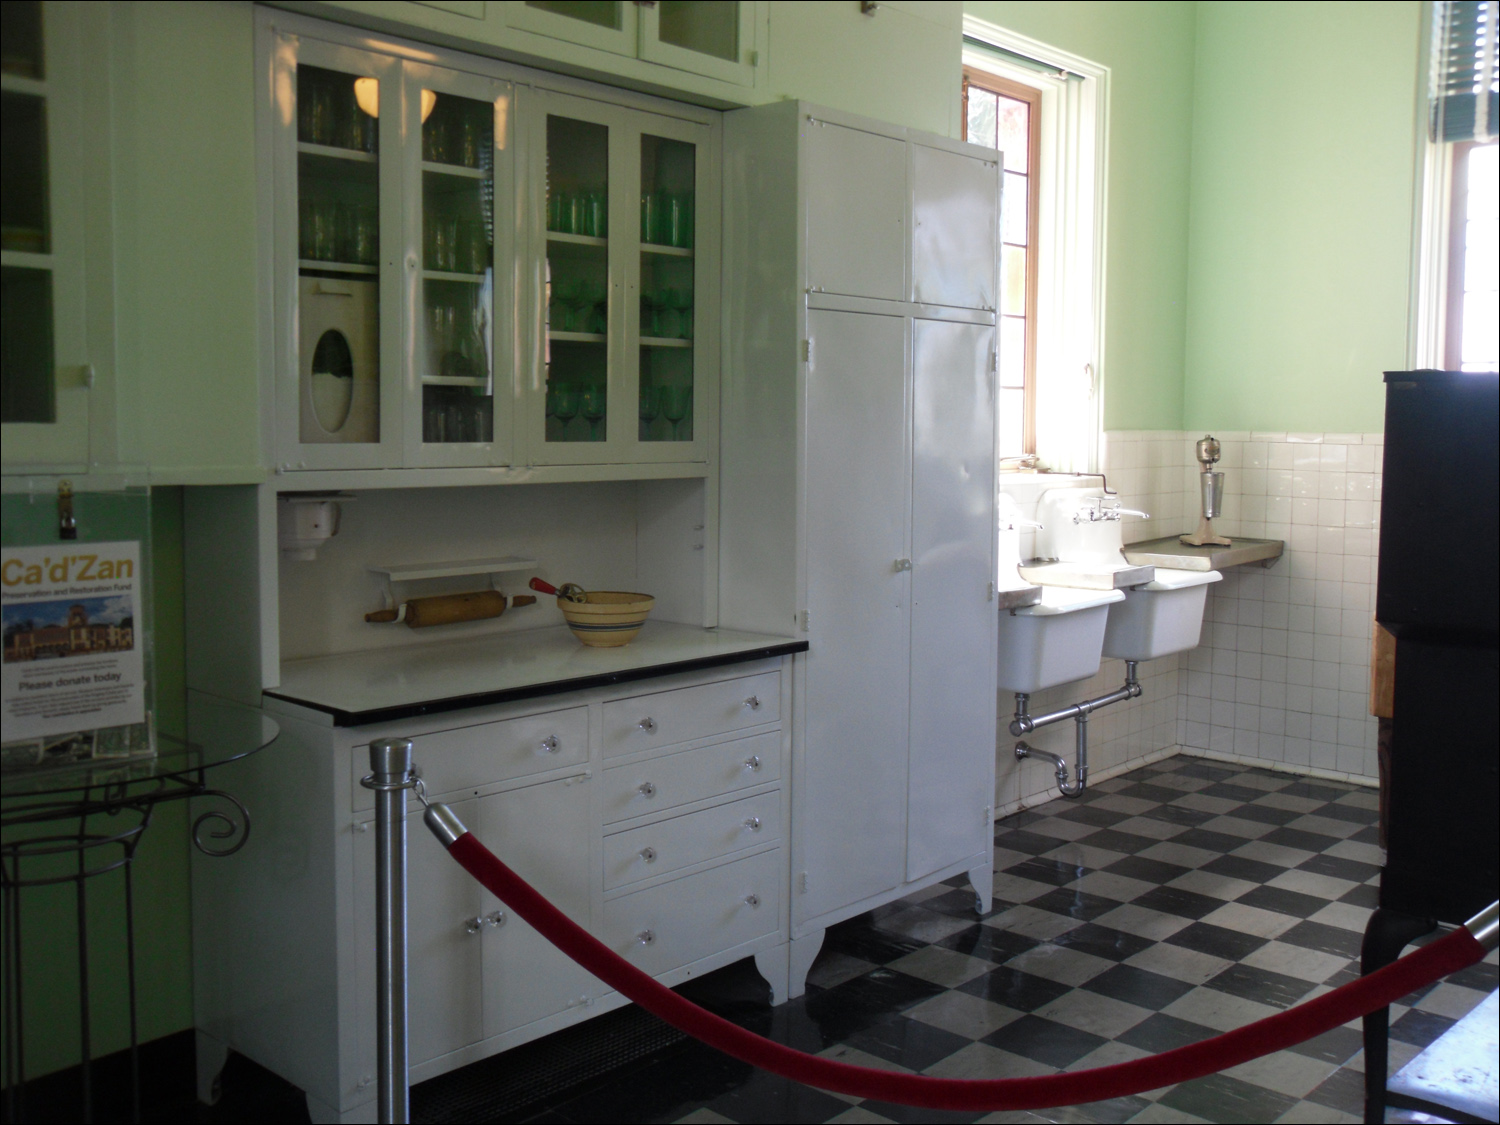 John & Mabel Ringling Museum-Ca' d'Zan mansion-pantry & kitchen areas